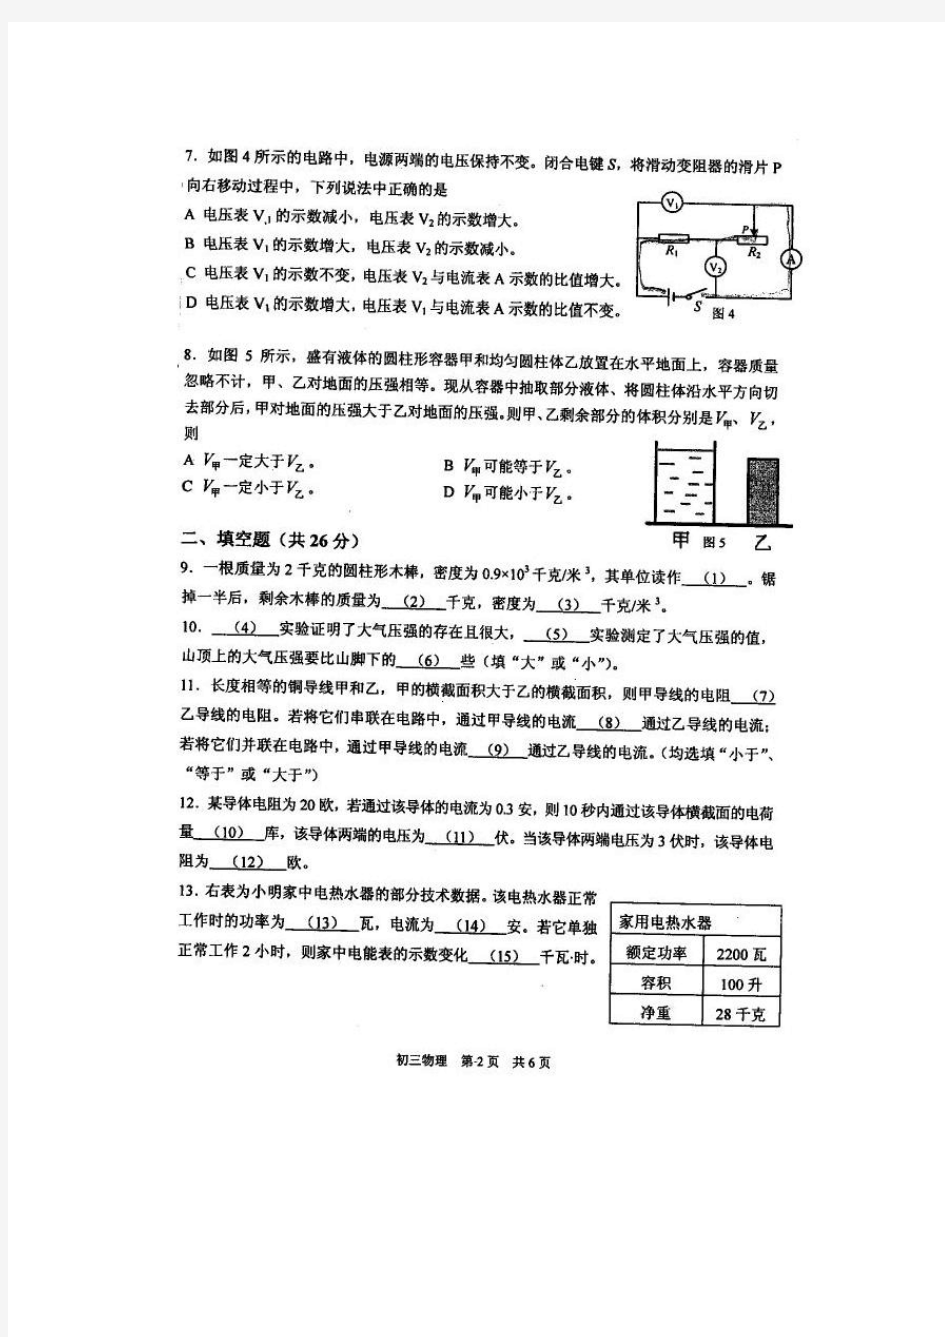 2014上海市各区县初三物理一模试卷权威官方版(含答案)金山区试卷